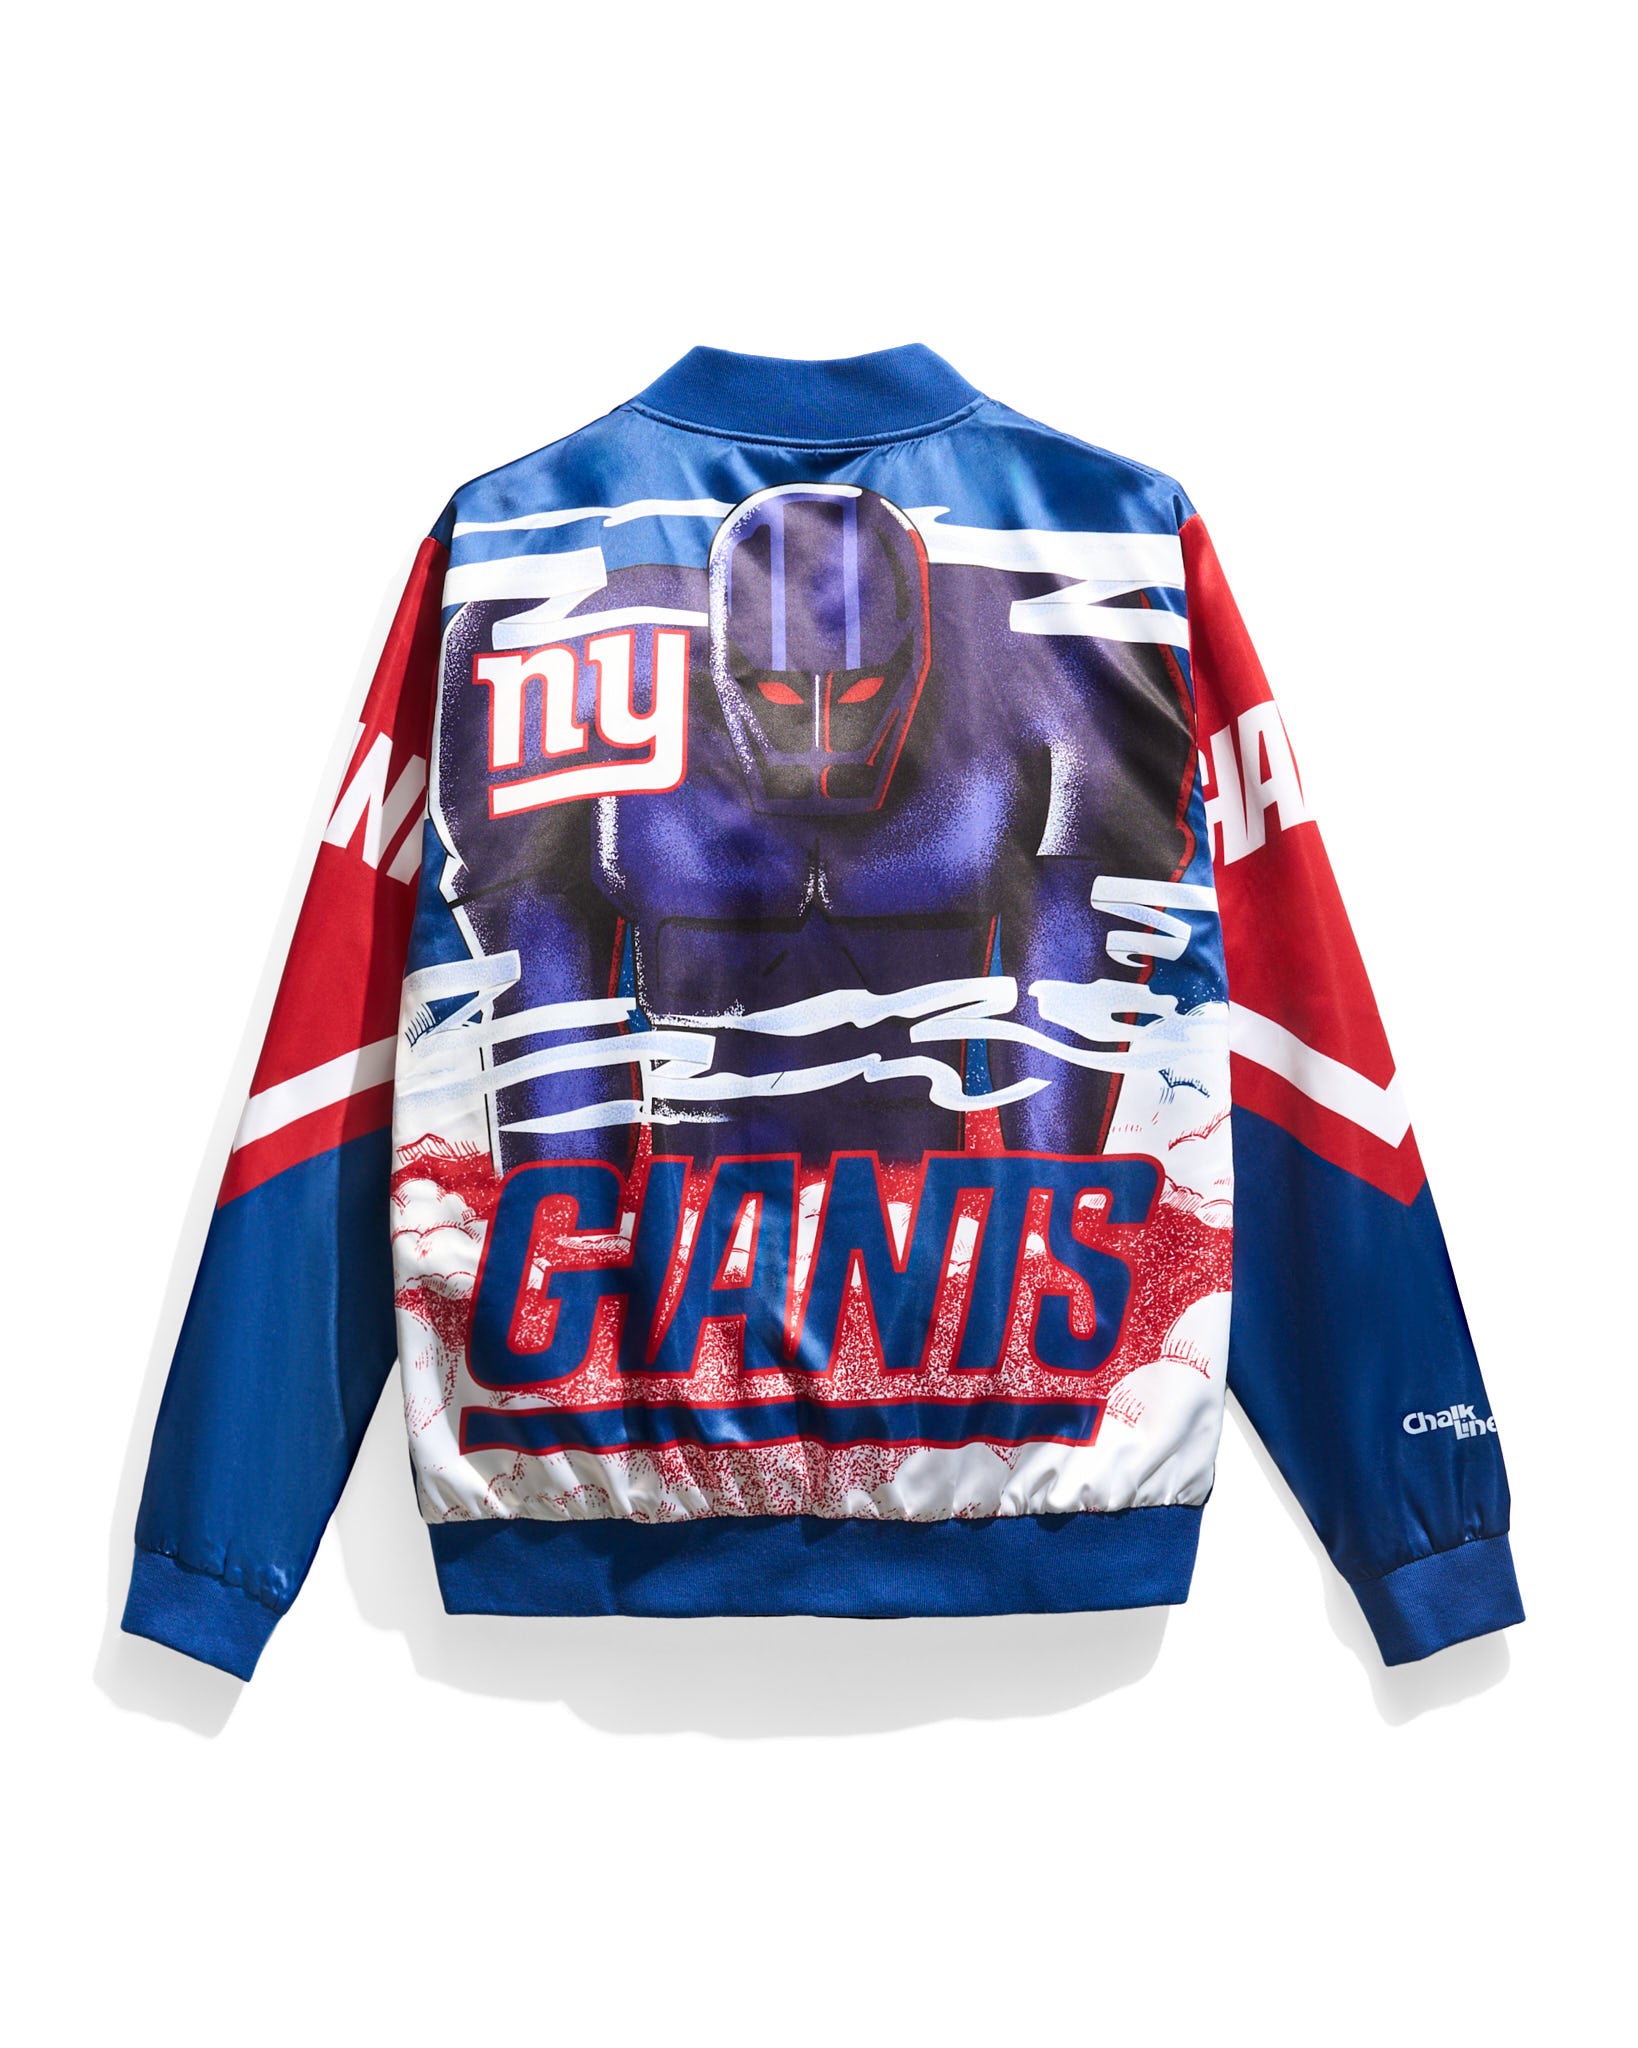 New York Giants Jacket, Giants Pullover, New York Giants Varsity Jackets,  Fleece Jacket